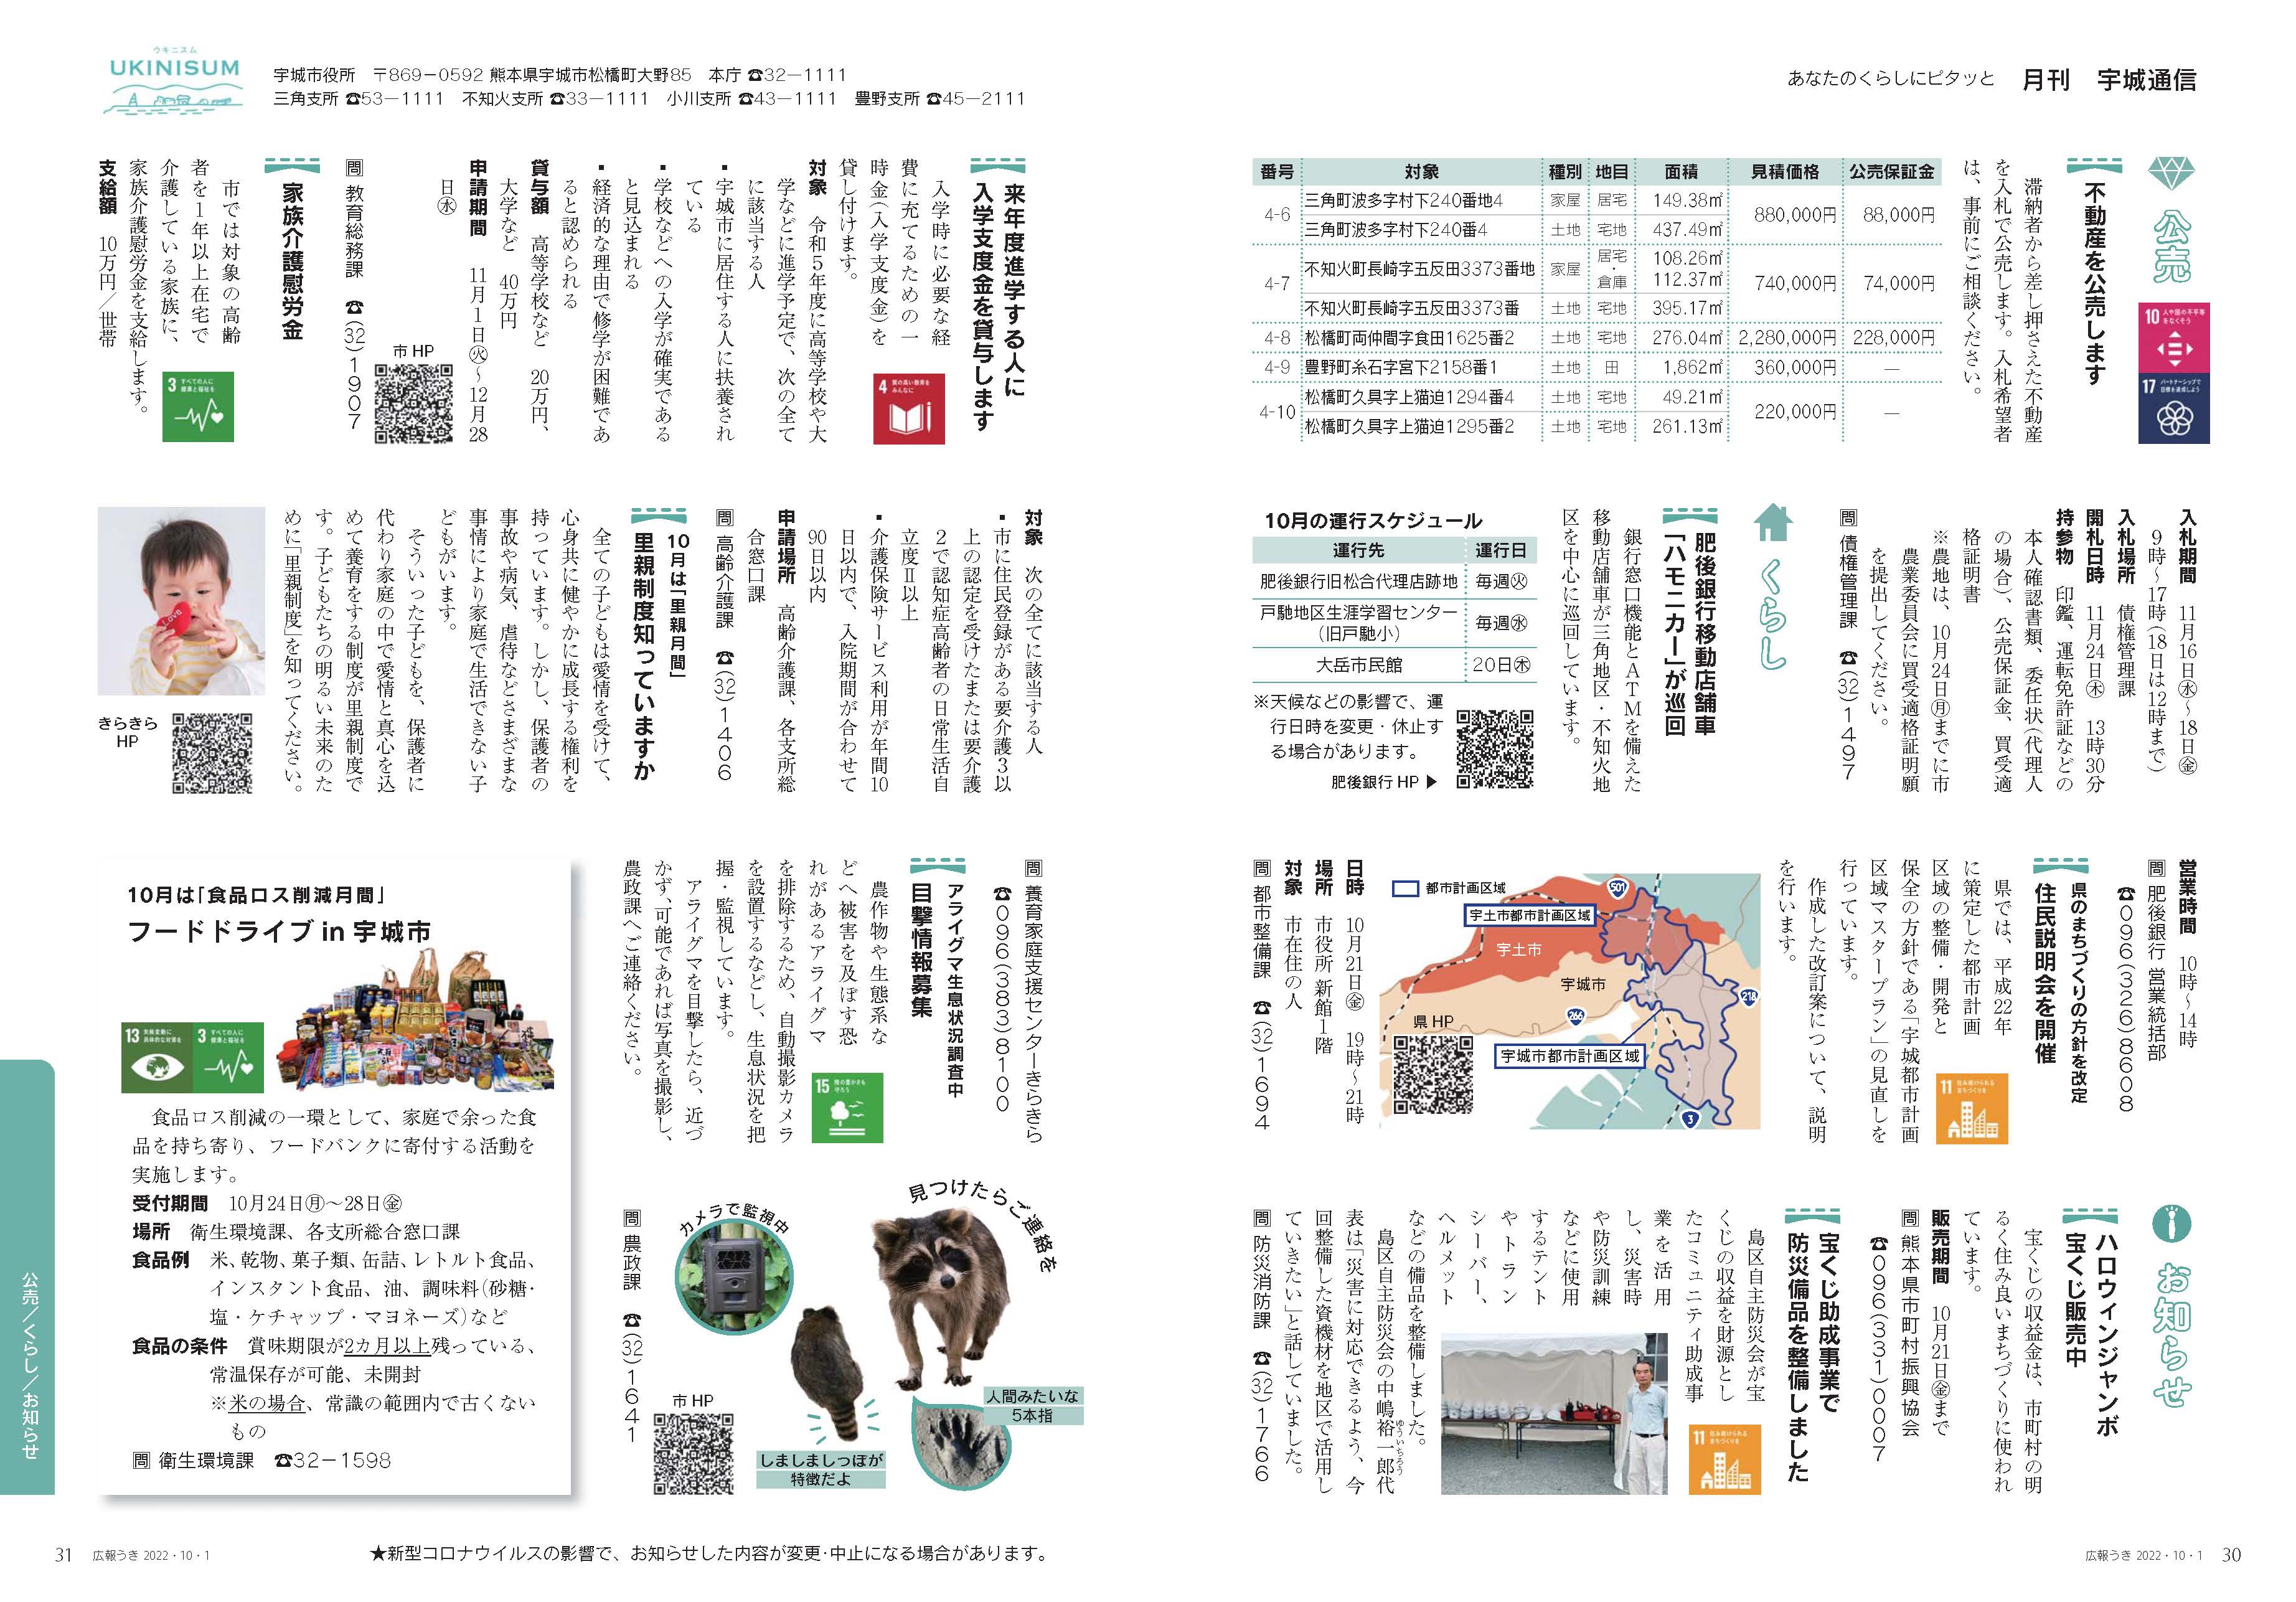 P30、P31　あなたのくらしにピタッと　月刊 宇城通信のページ画像　詳細はPDFリンクを参照ください。